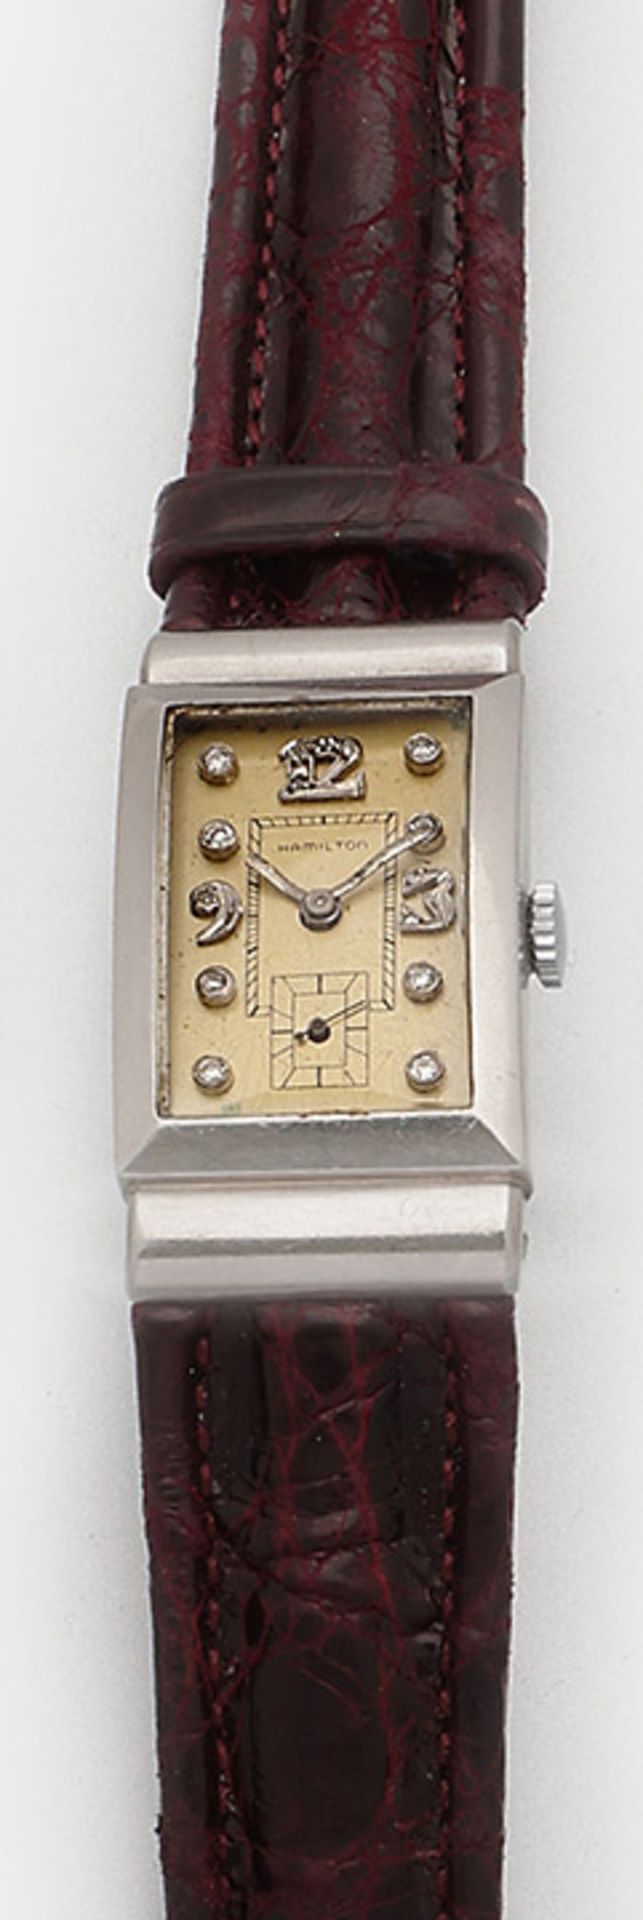 Herren-Armbanduhr von Hamilton aus den 40er Jahren - Bild 2 aus 3